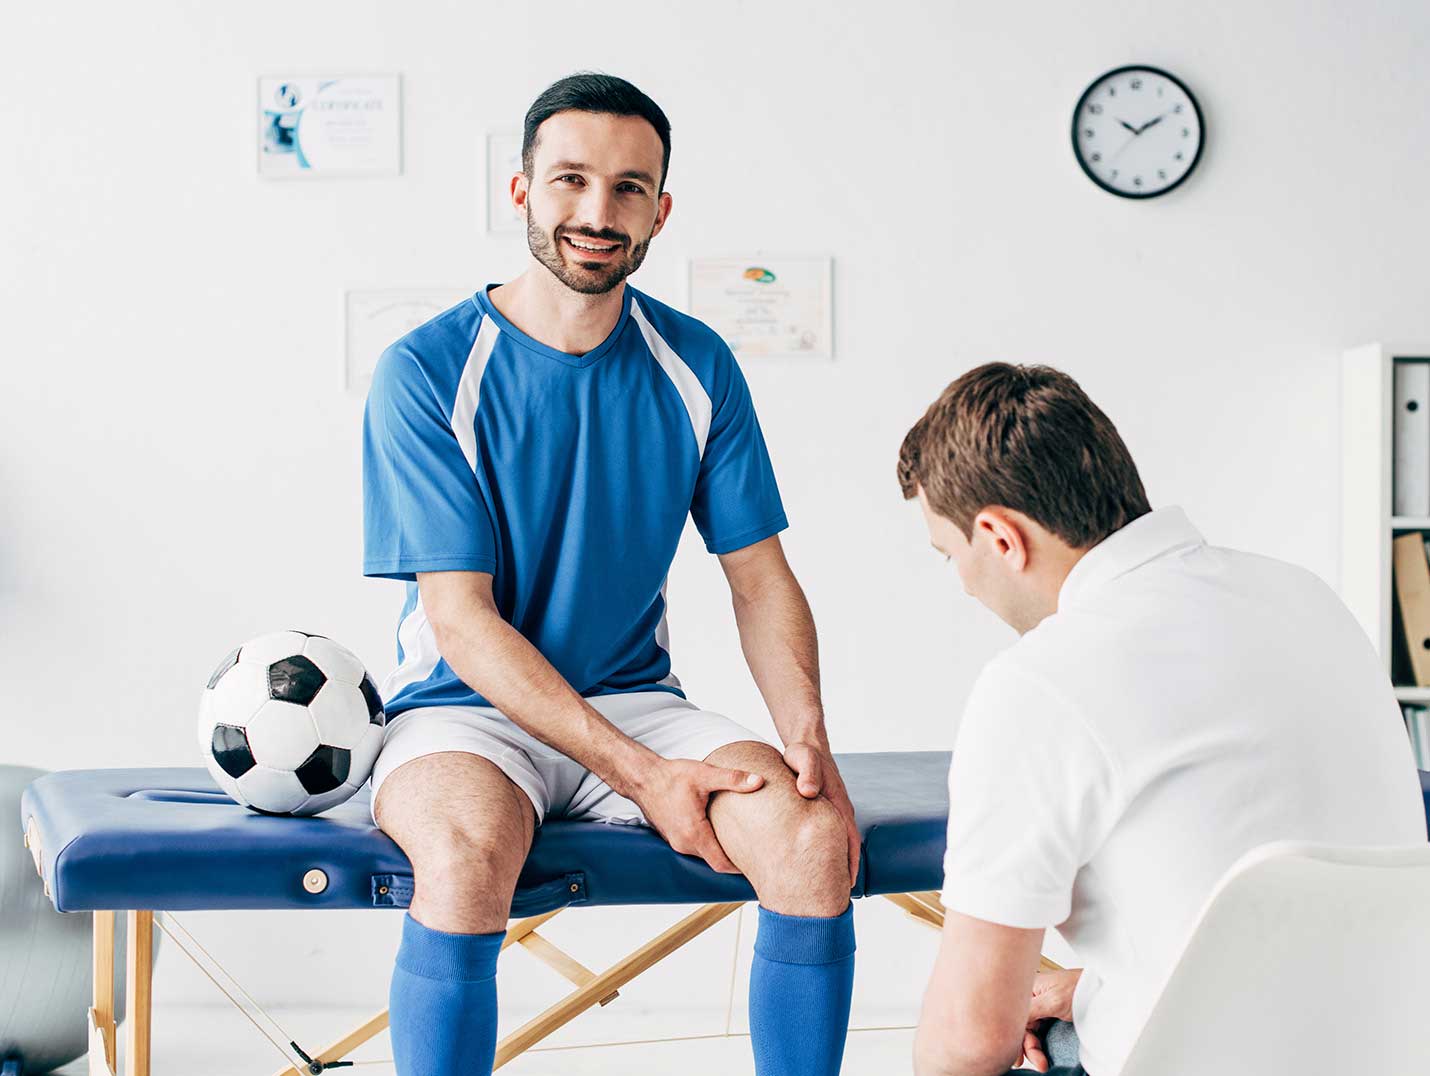 Futbolista con uniforme azul y blanco, sentado en una camilla terapéutica azul, mientras un doctor ve su rodilla